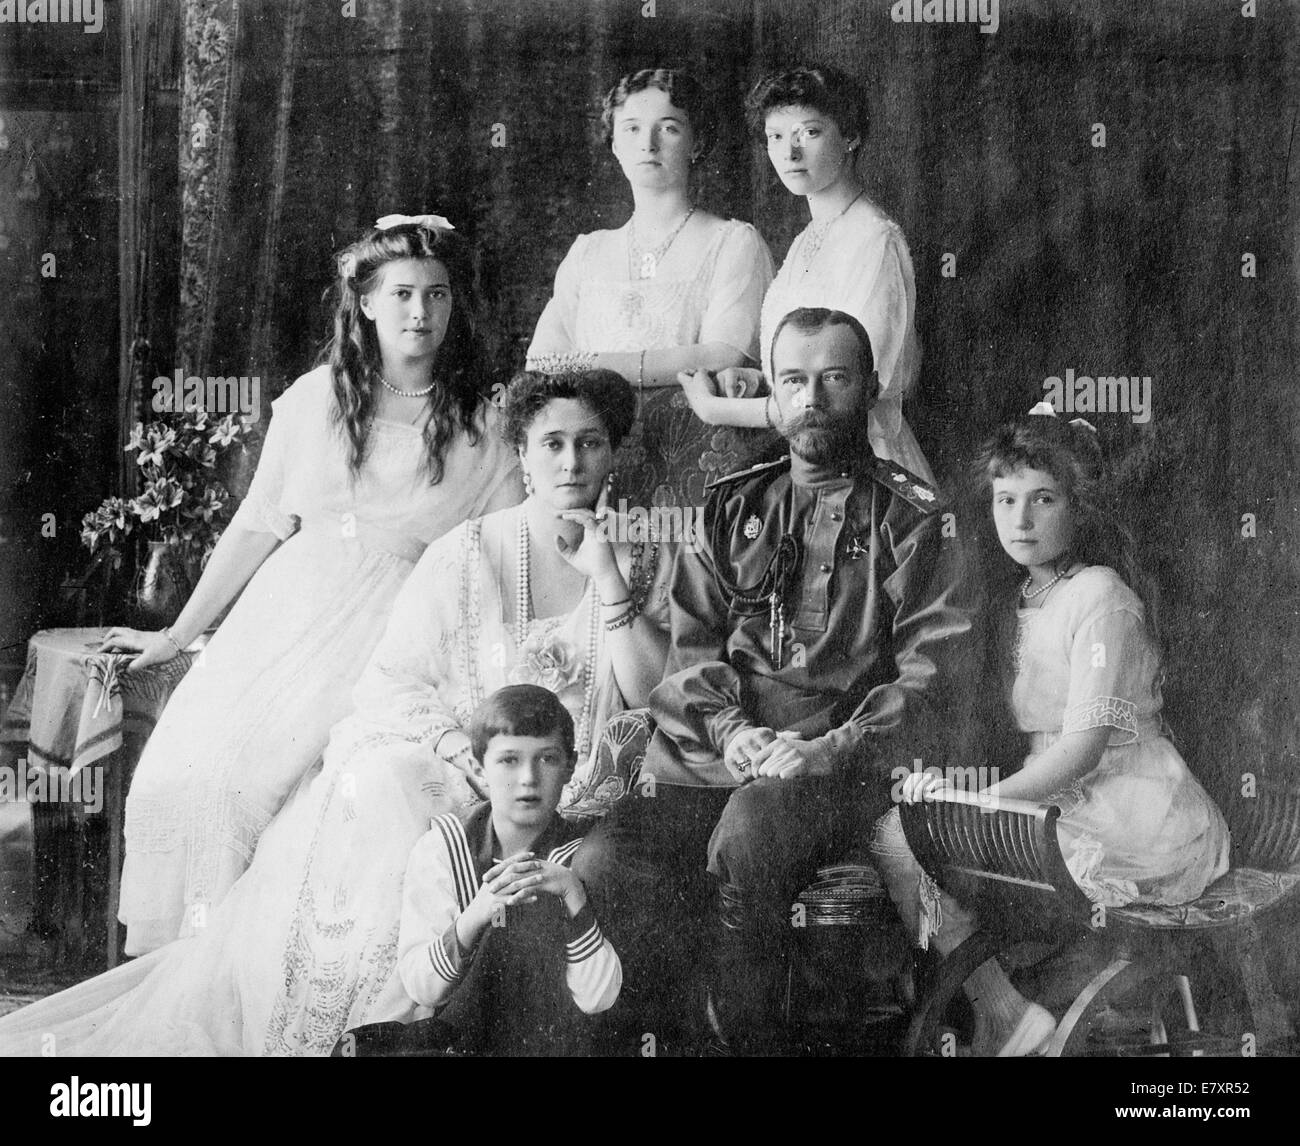 Russische Königsfamilie - Mitglieder der Romanows, der letzten königlichen Familie von Russland unter anderem: (von links nach rechts) sitzt Marie, Königin Alexandra, Zar Nicholas II, Anastasia, Alexei (vorne) und stehend (von links nach rechts), Olga und Tatjana, ca. 1914 Stockfoto